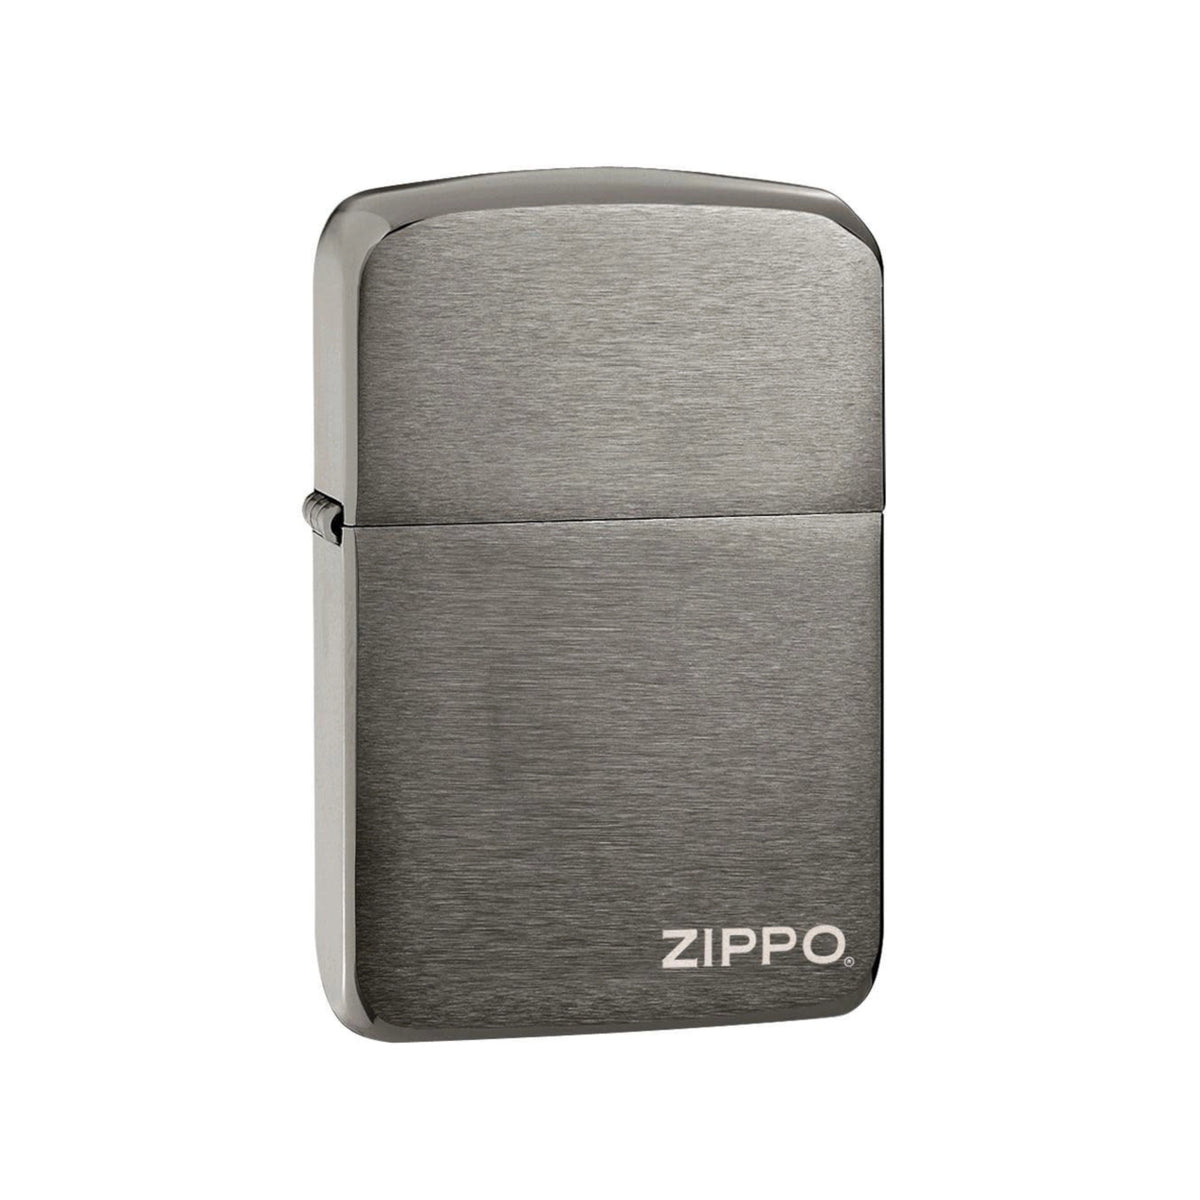 Zippo - Black Ice 1941 Replica | con logo Zippo